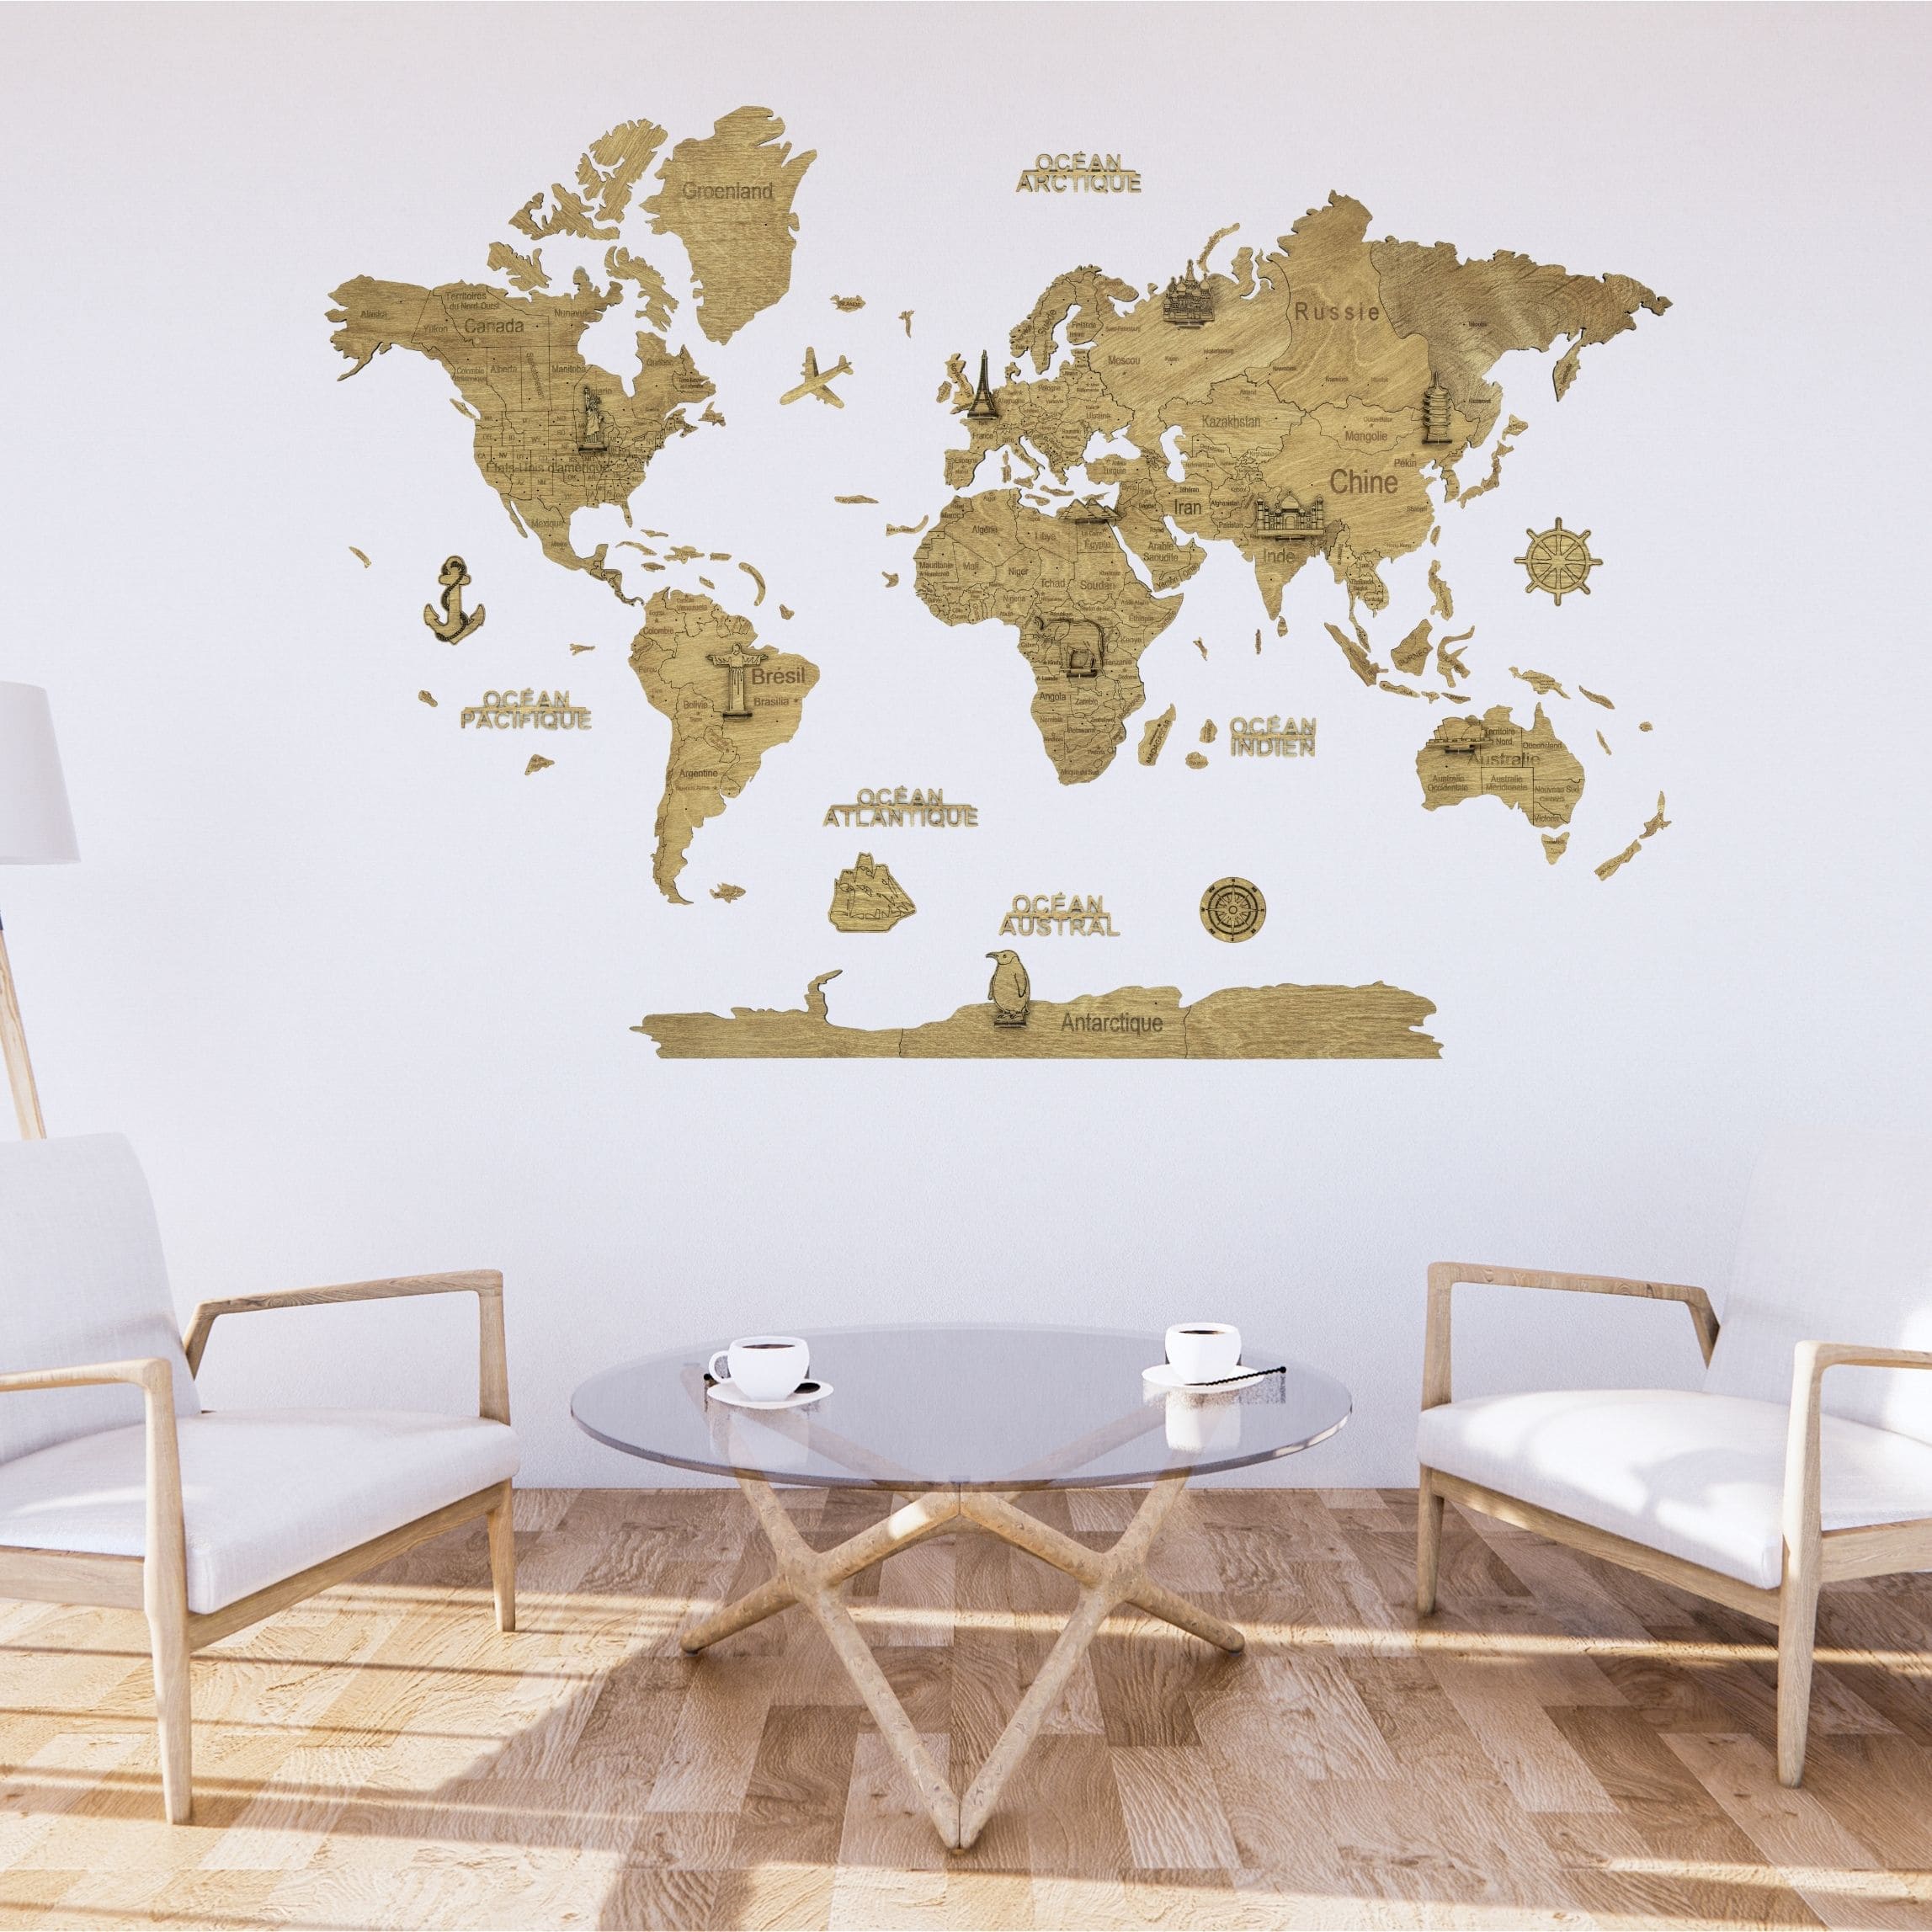 Carte du monde murale : comment l'intégrer à ma décoration ?